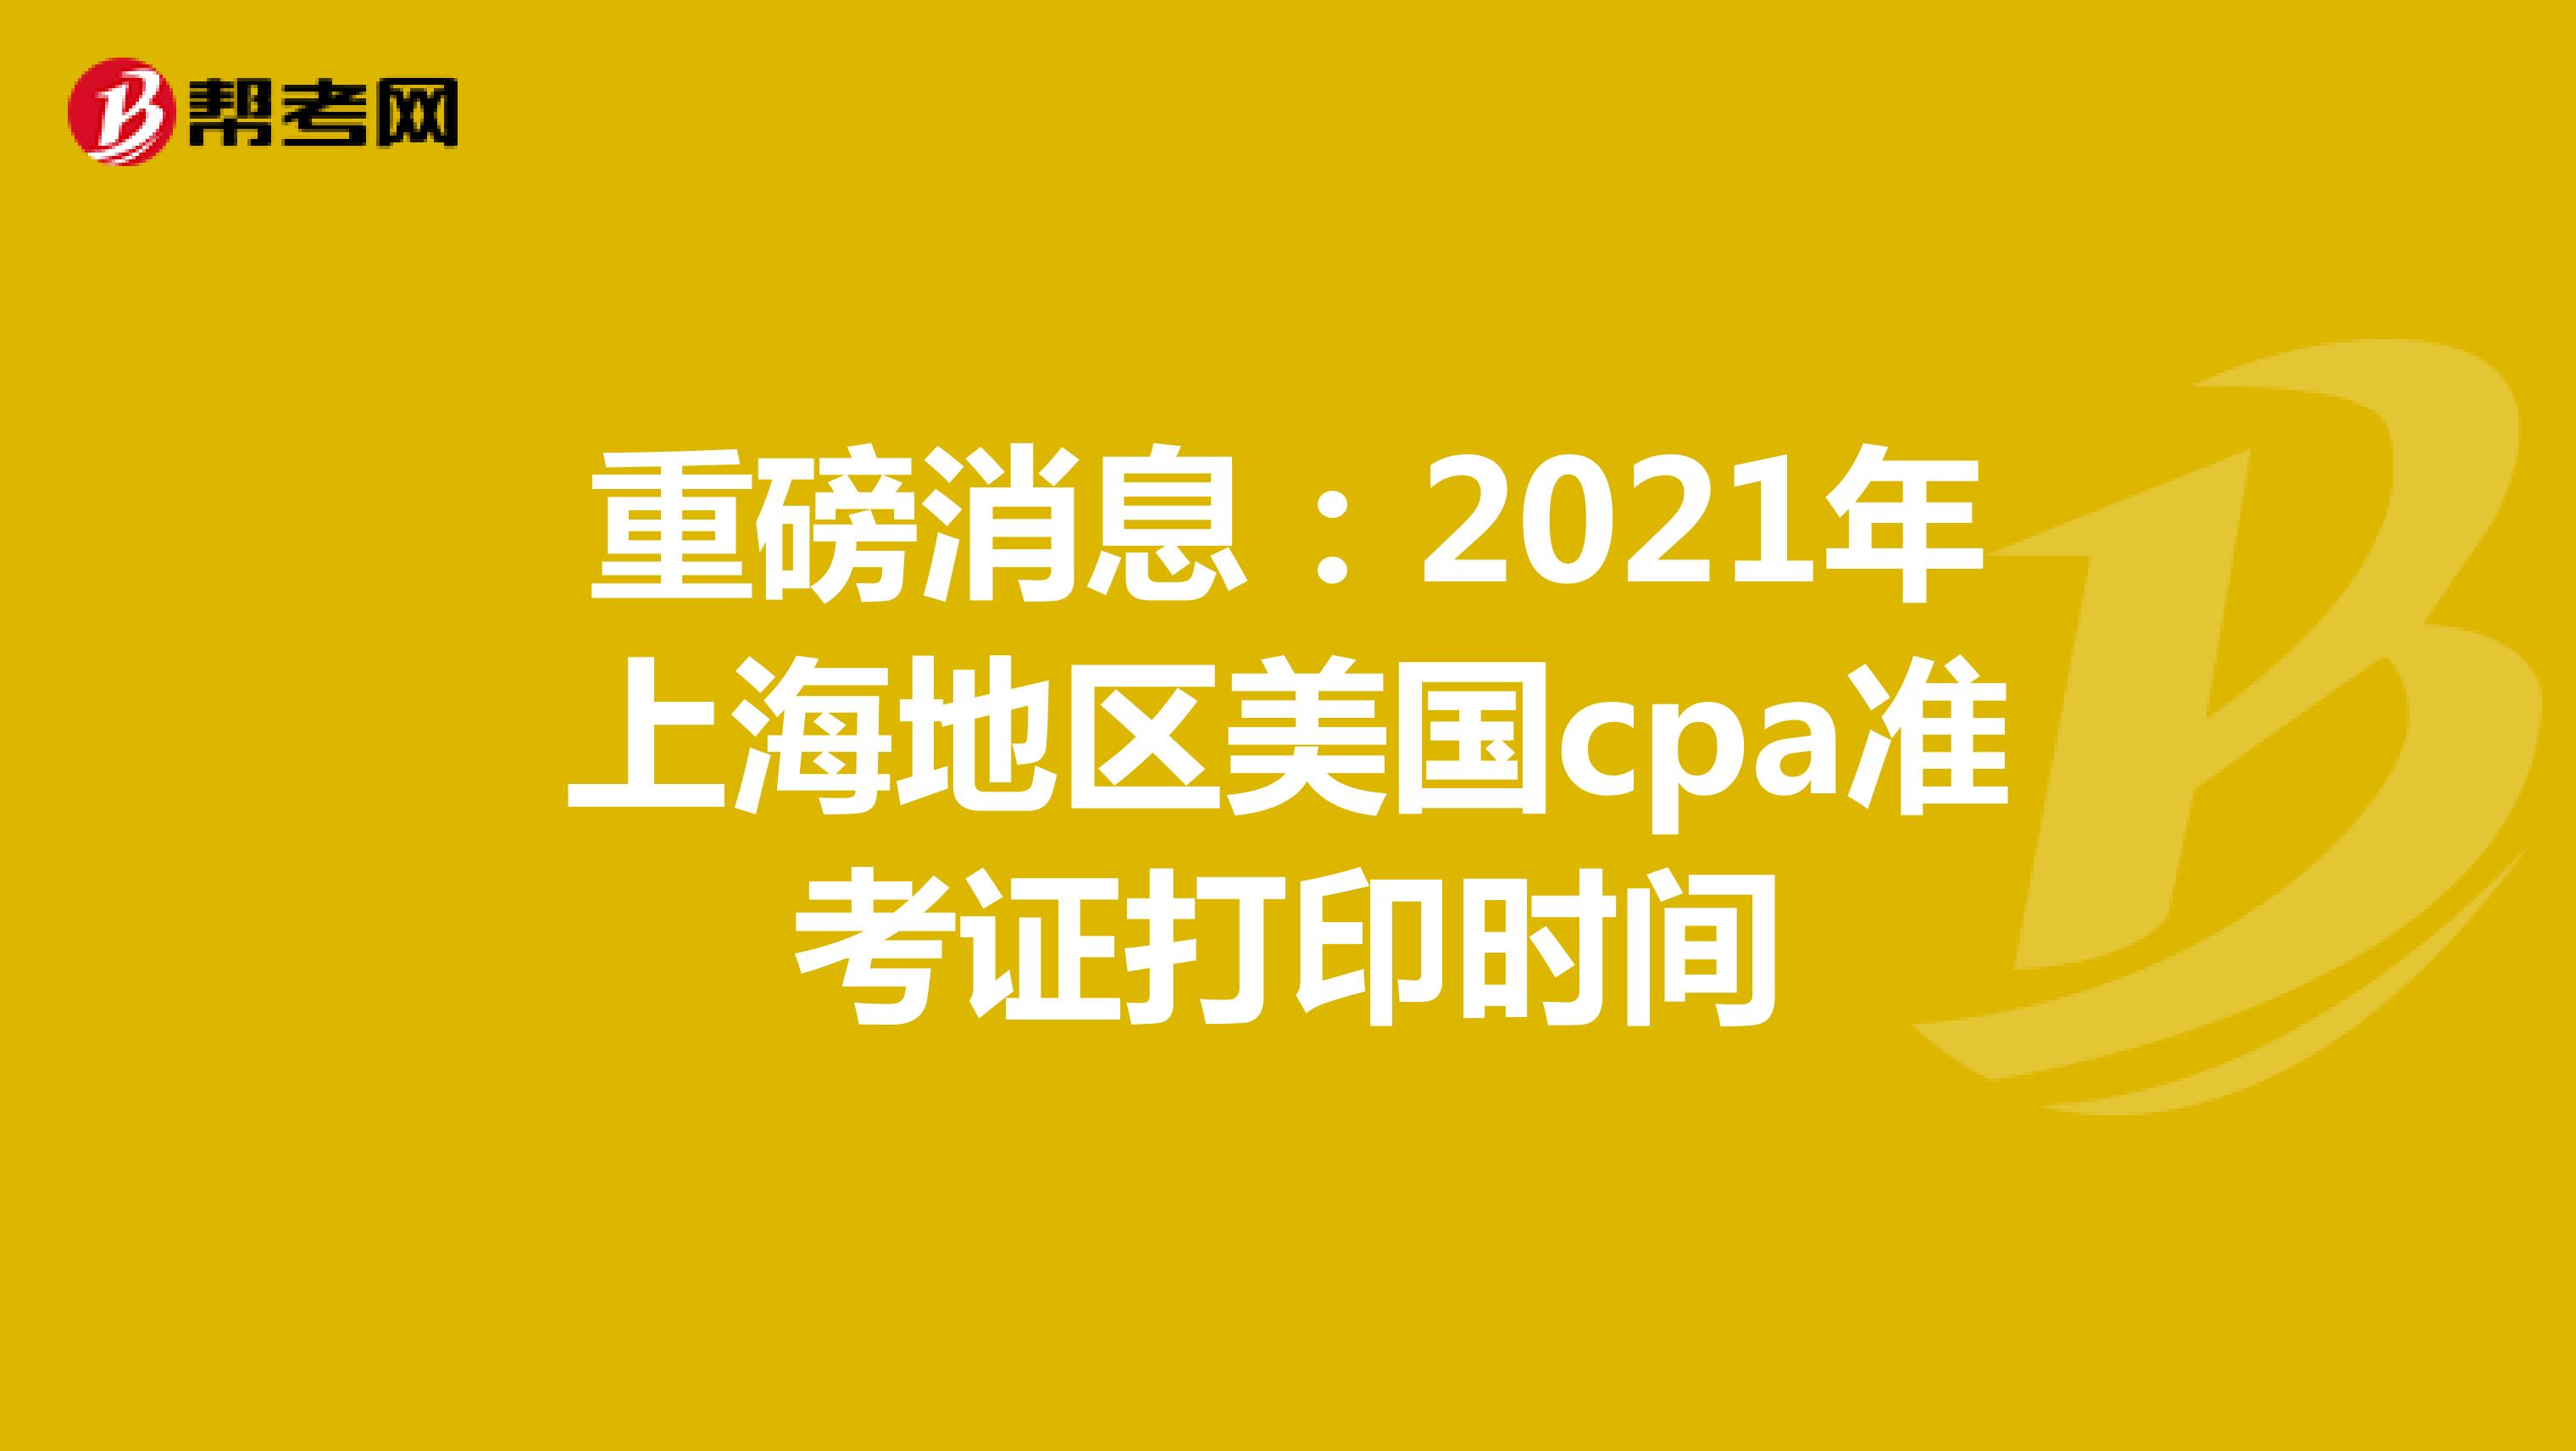 重磅消息：2021年上海地区美国cpa准考证打印时间